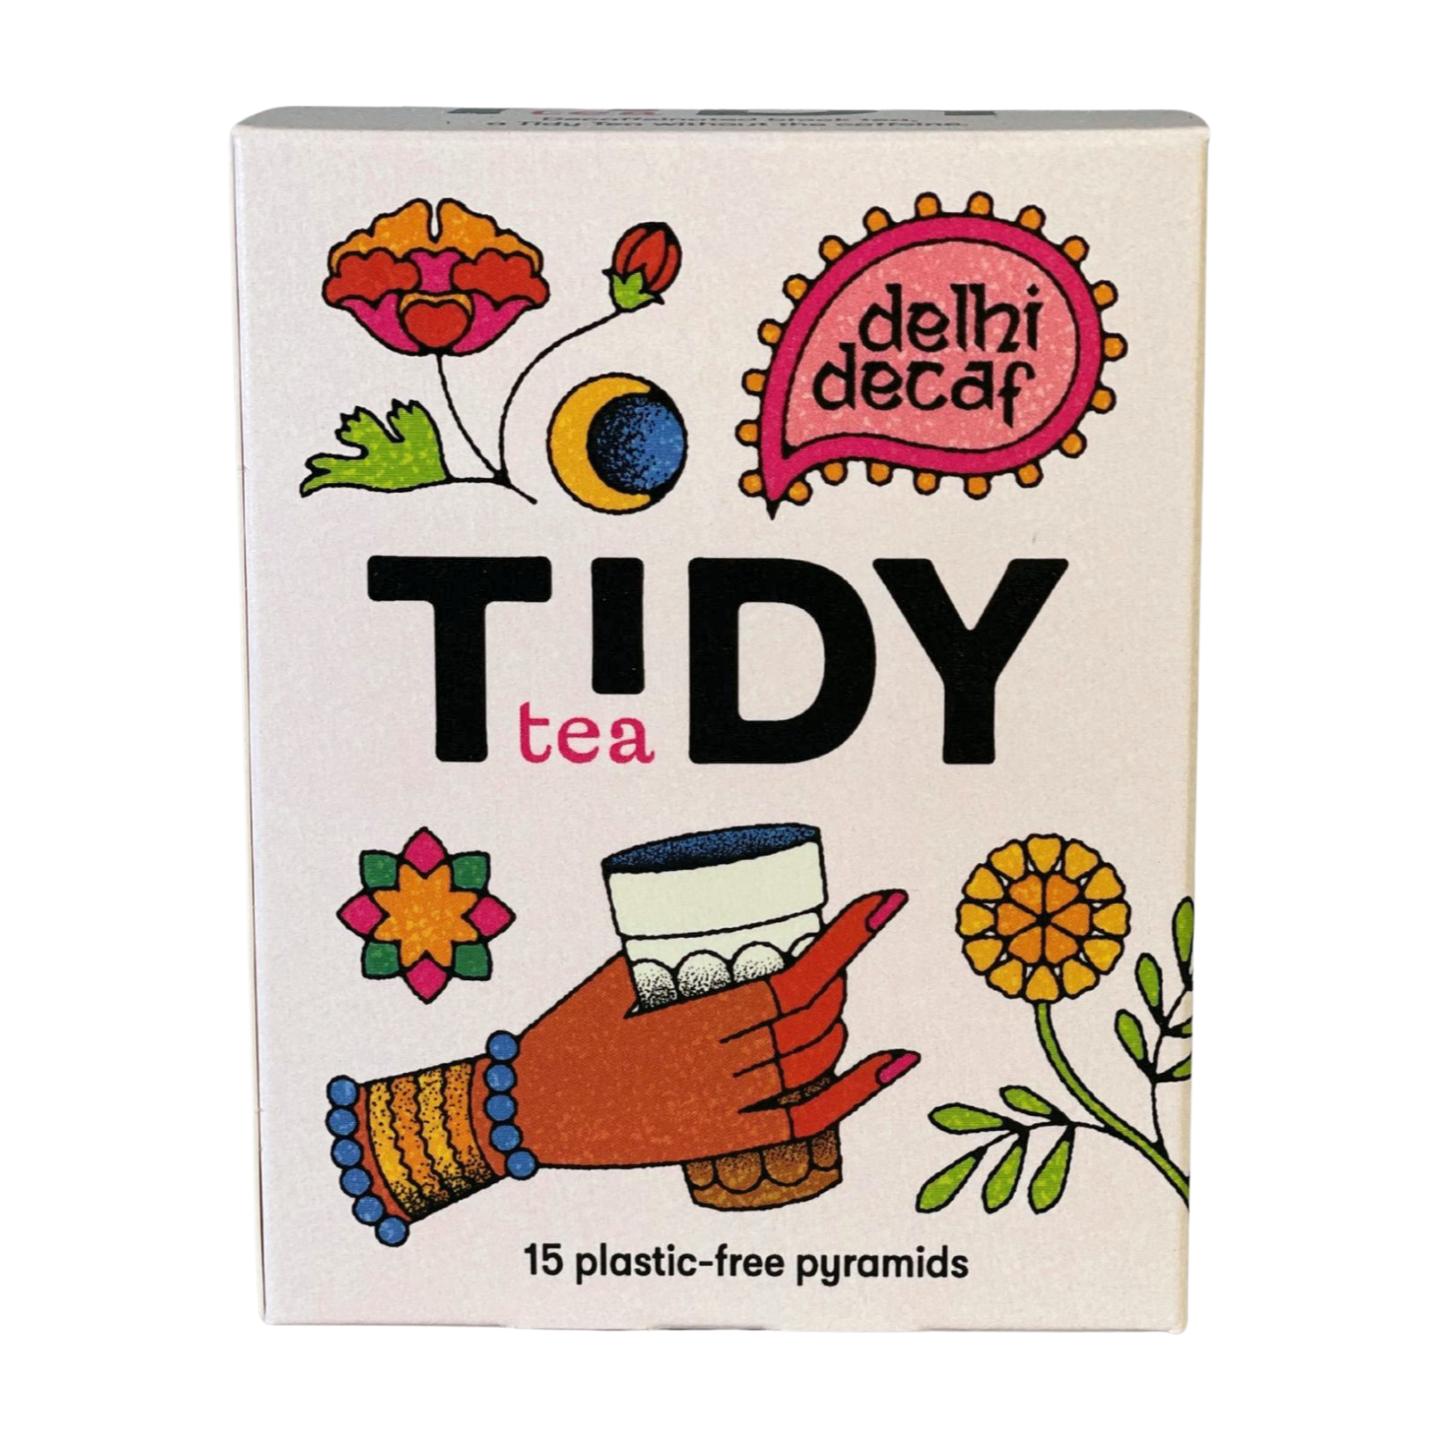 Tidy Tea Delhi Decaf Tea (6x15 Pyramids)